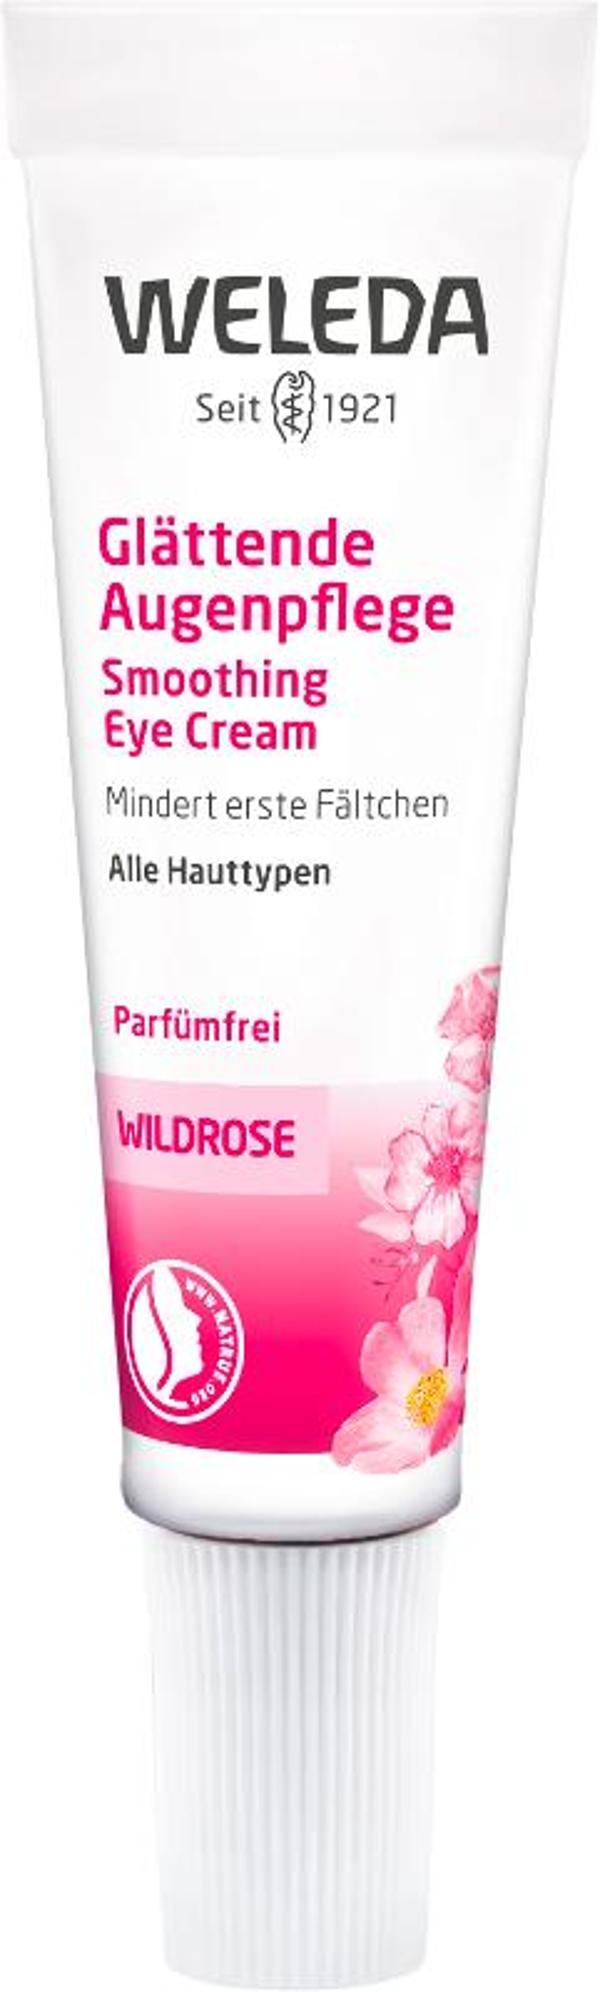 Produktfoto zu Wildrosen Glättende Augencreme